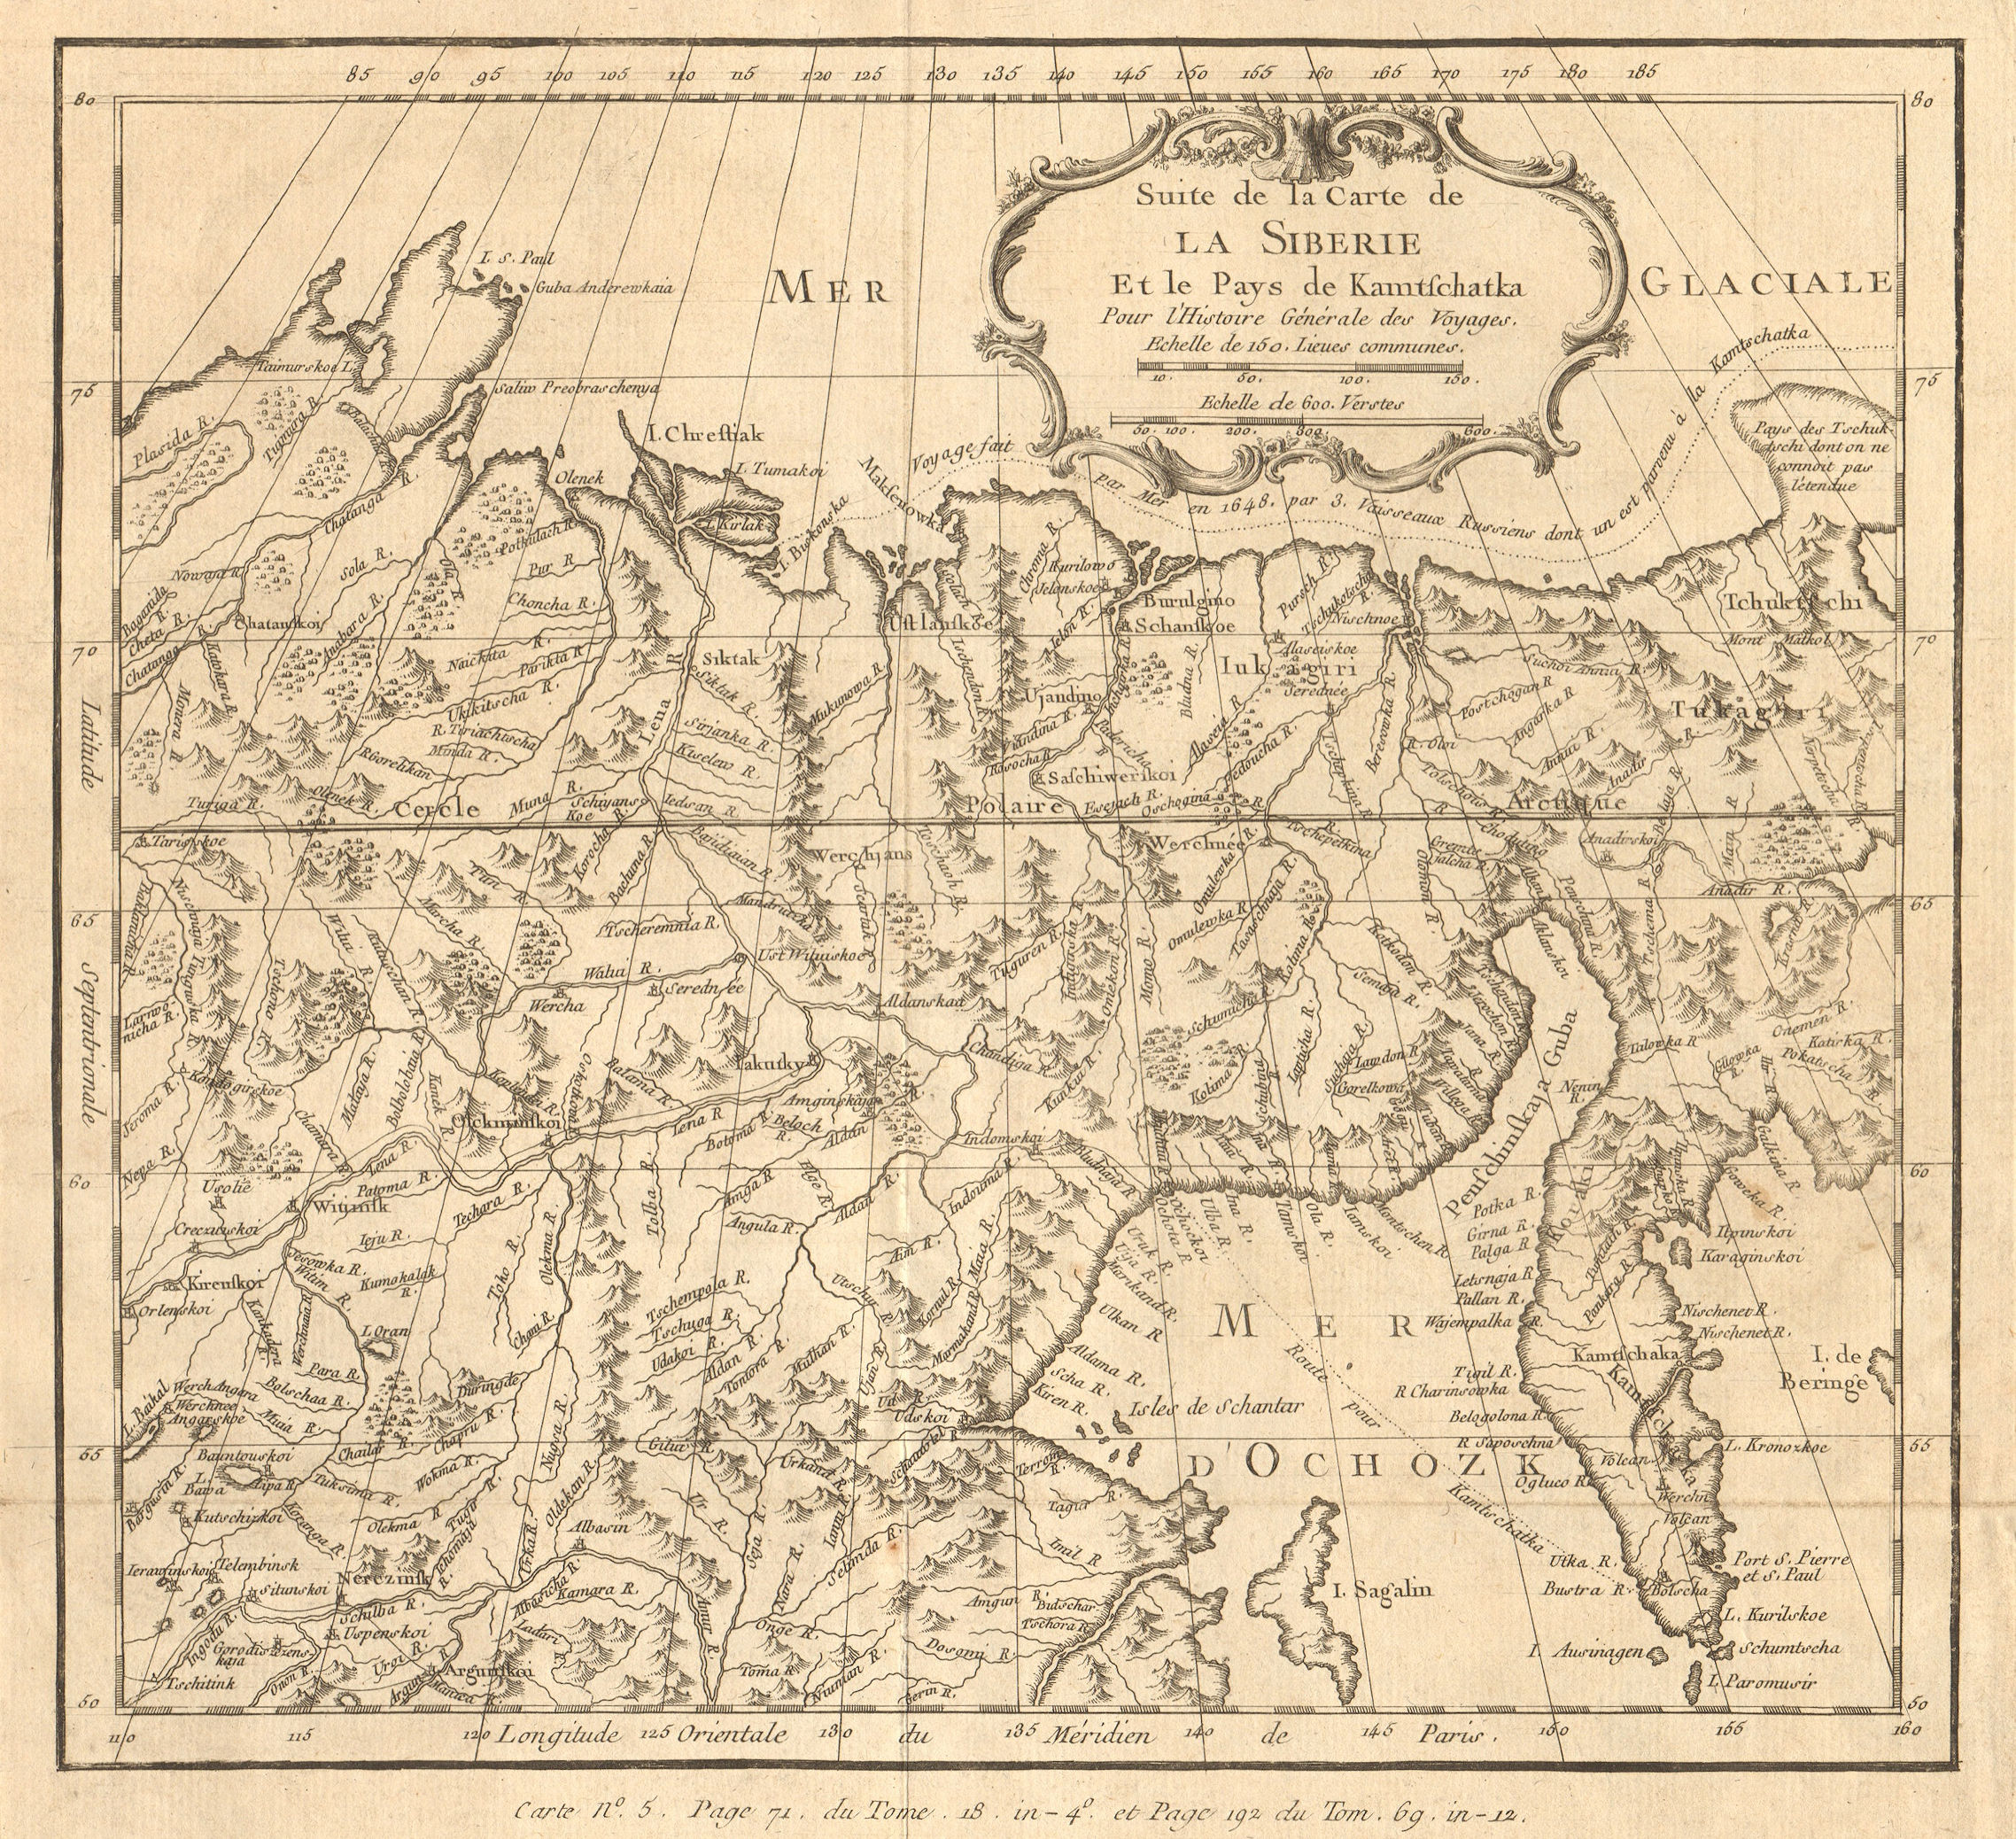 Associate Product 'Suite de la Carte de la Sibérie et le Pays de Kamtschatka''. BELLIN 1768 map